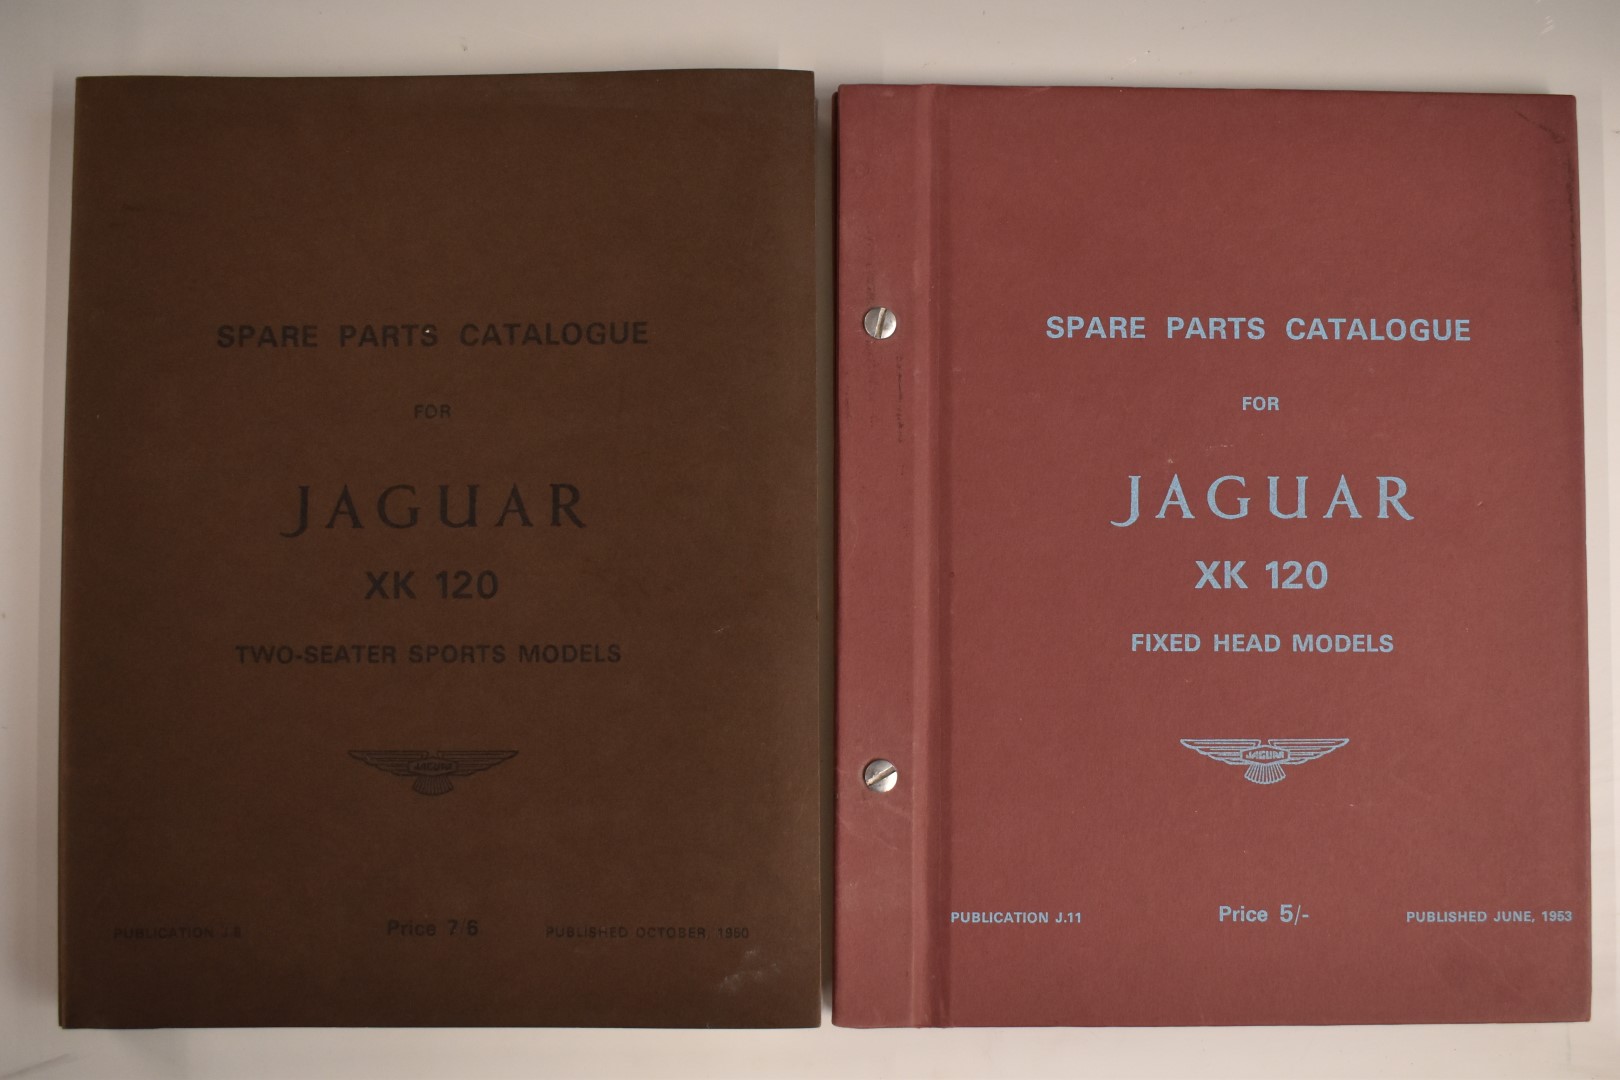 Jaguar XK 120 spare parts catalogue and a catalogue for the fixed head models, both Jaguar